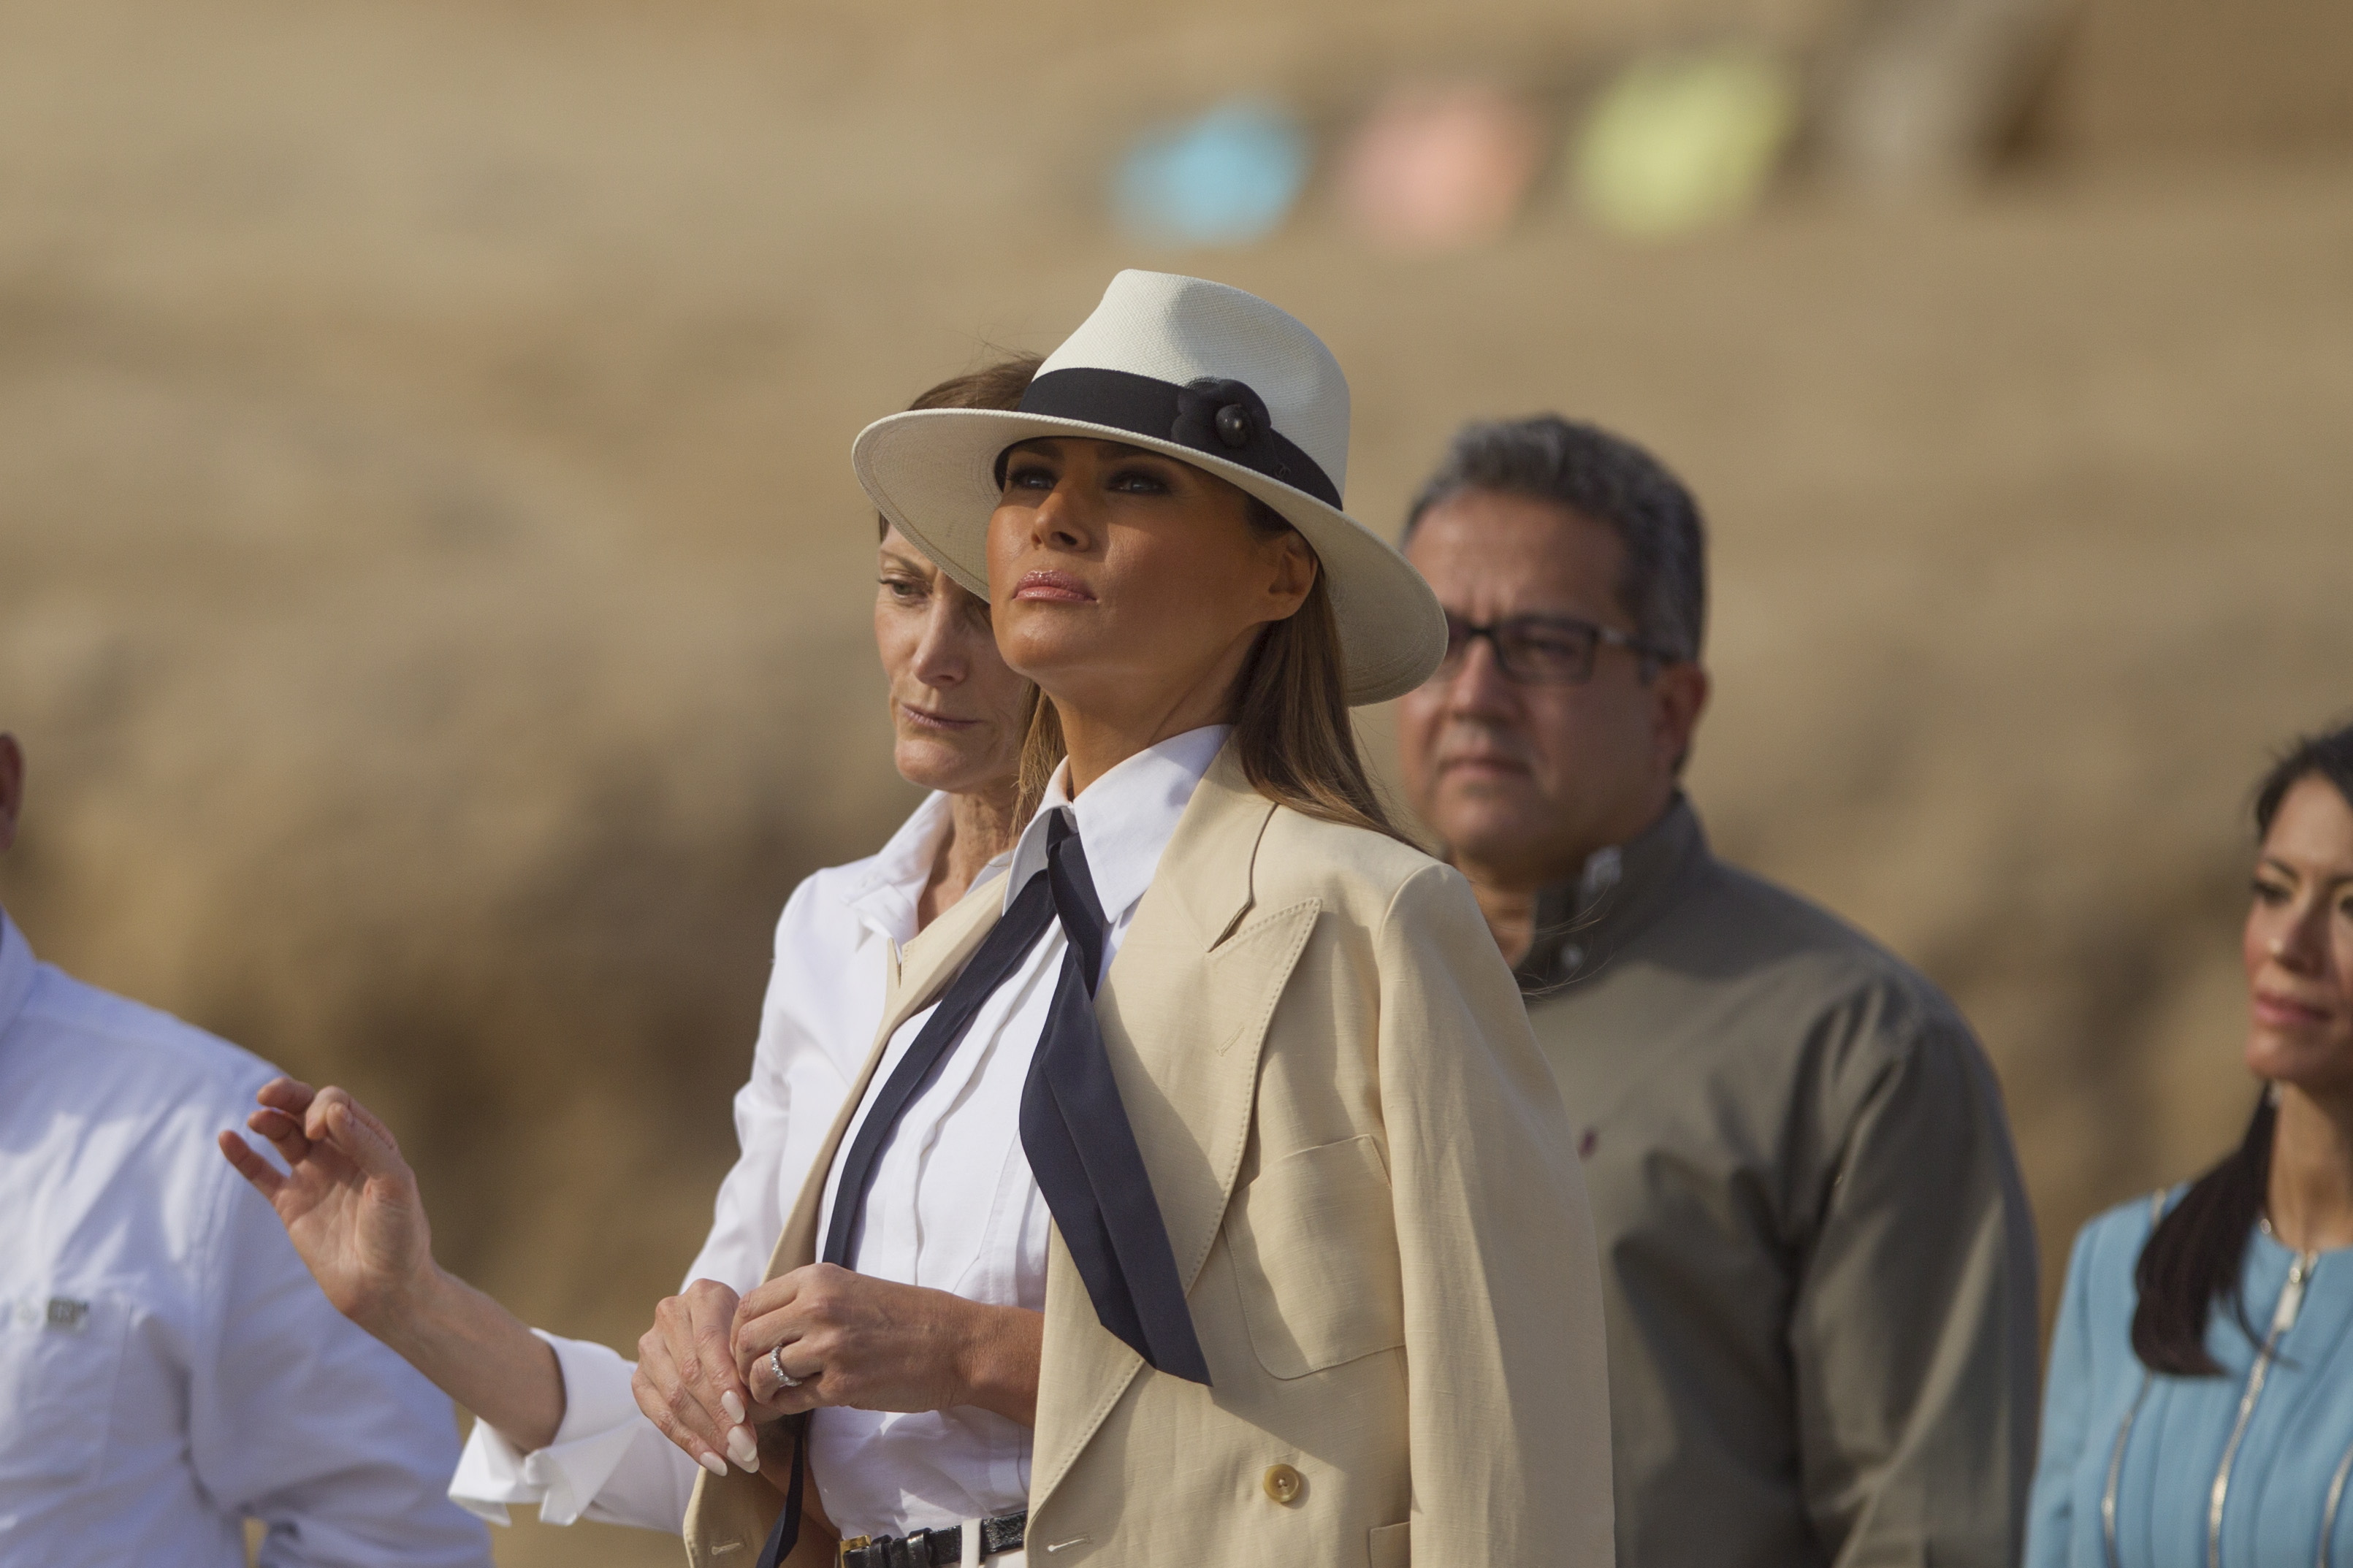 Първата дама на САЩ Мелания Тръмп приключи африканската си обиколка с посещение в Египет, където разгледа пирамидите и сфинкса в Гиза.